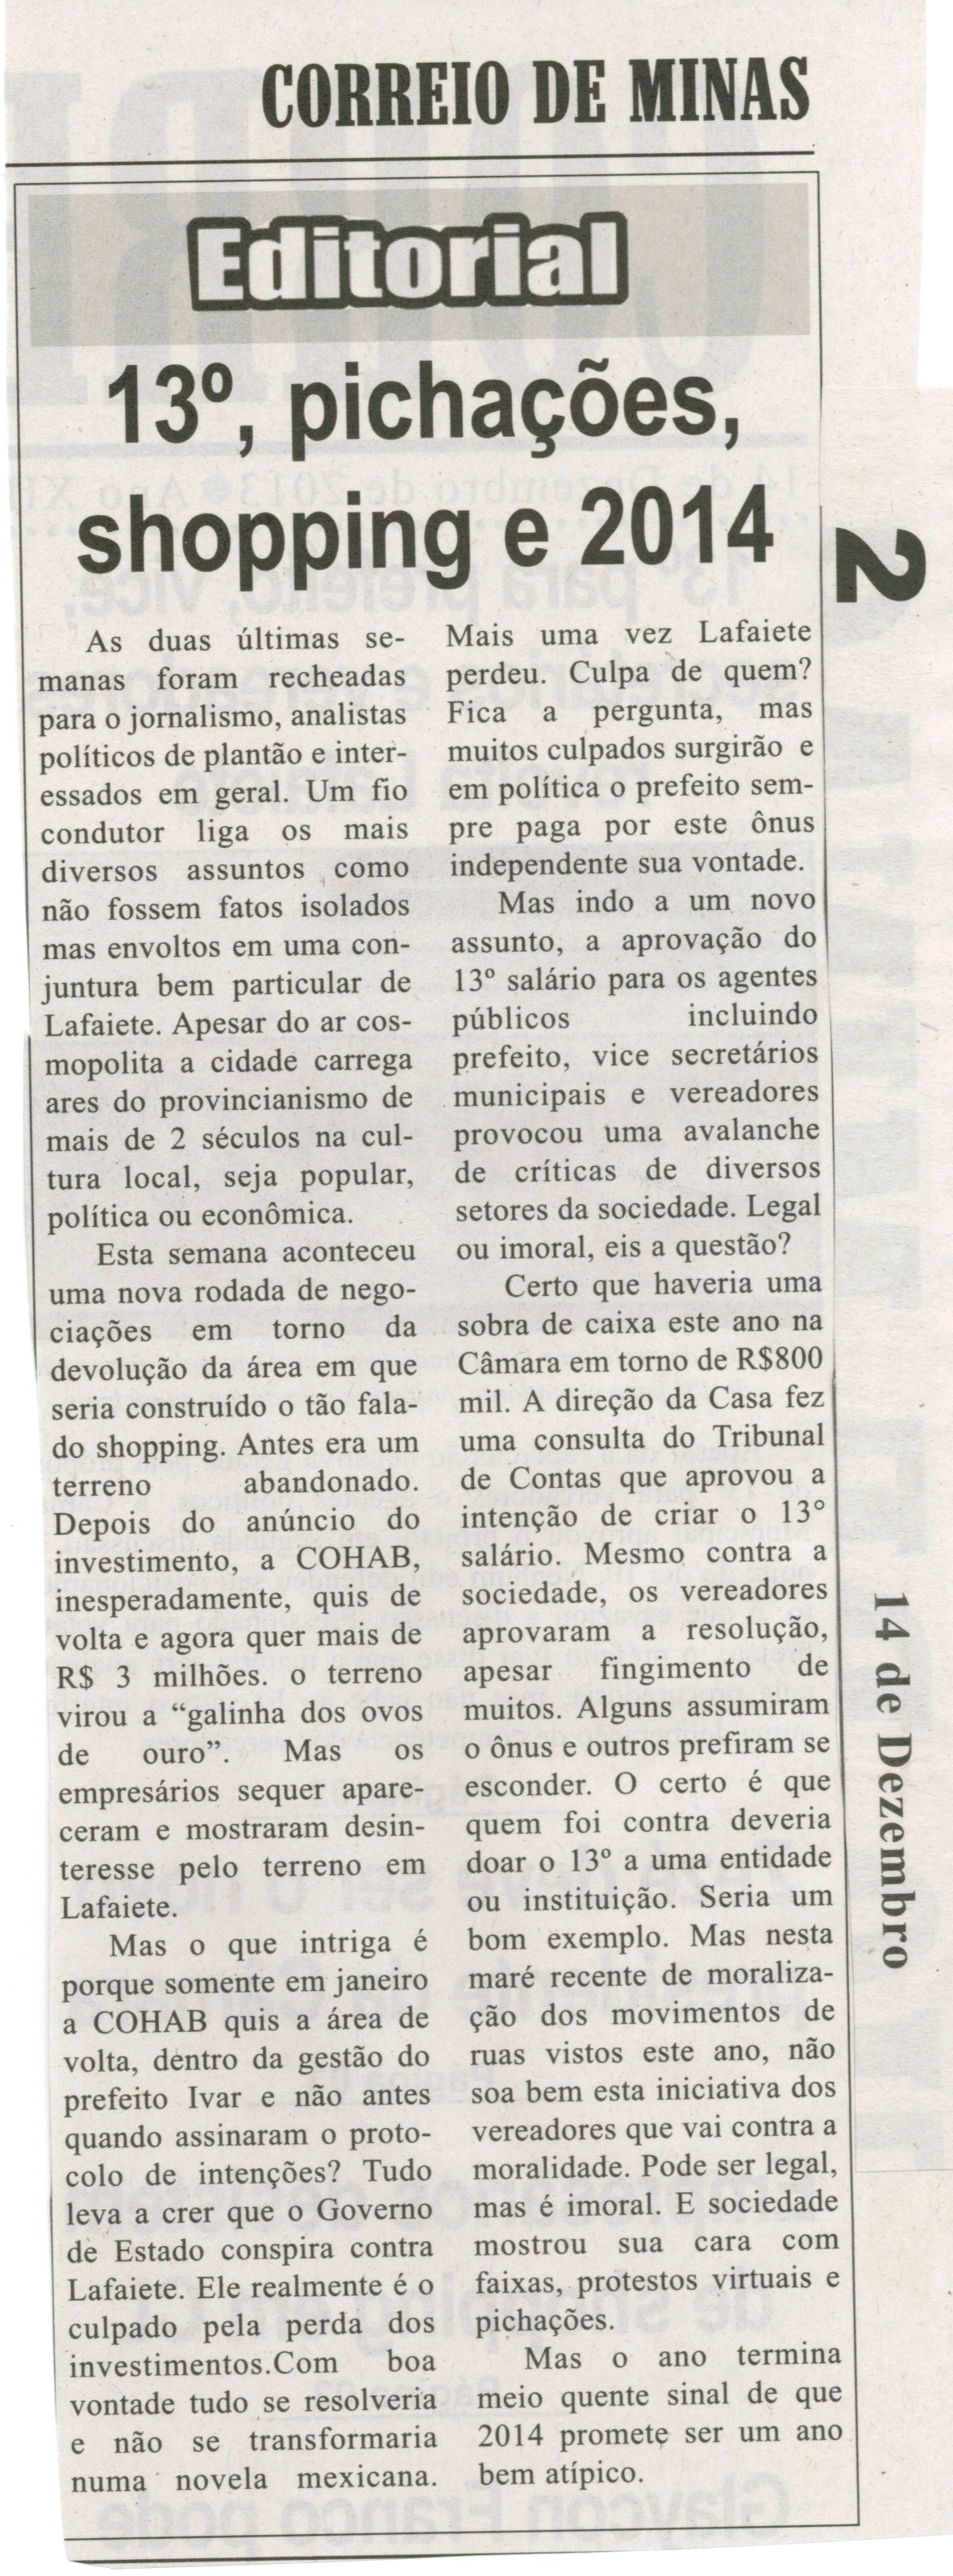 13º, pichações, shopping e 2014. Jornal Correio da Cidade, Conselheiro Lafaiete, 14 dez. 2013, p. 2.